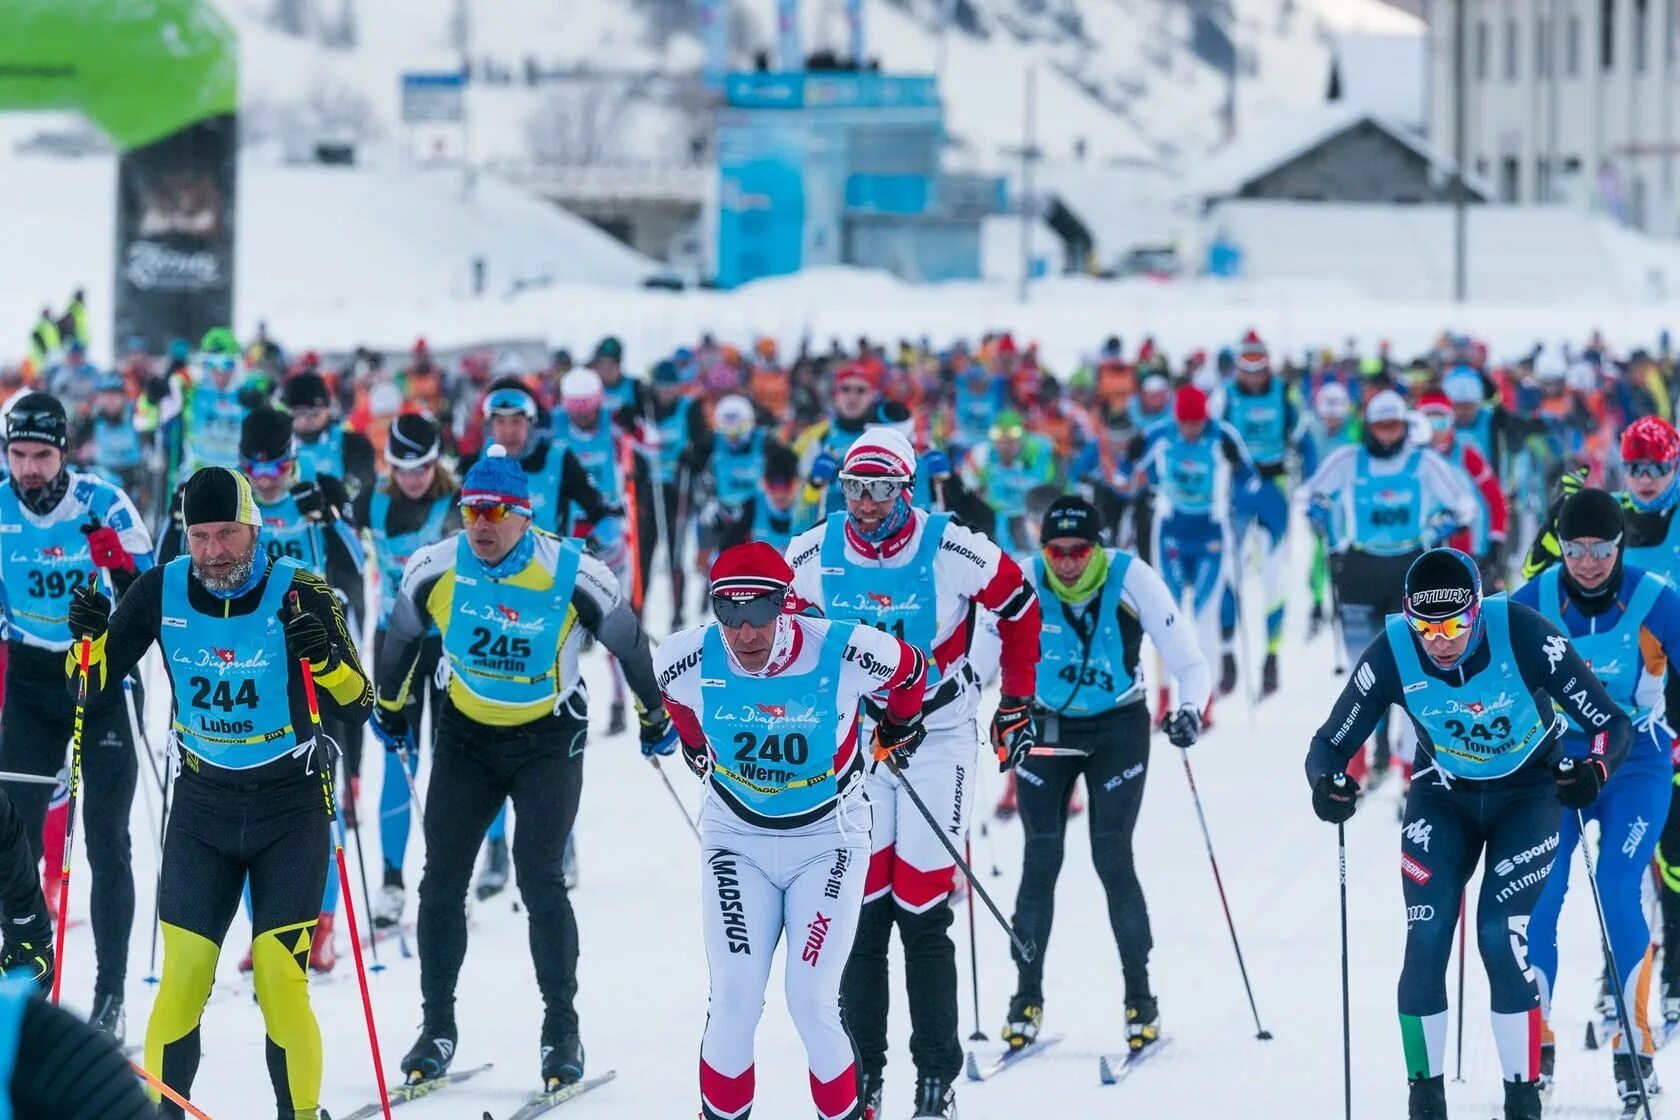 Результаты лыжников. Лыжный комбез Максима Вылегжанина. Лыжный марафон. Лыжные гонки классика.